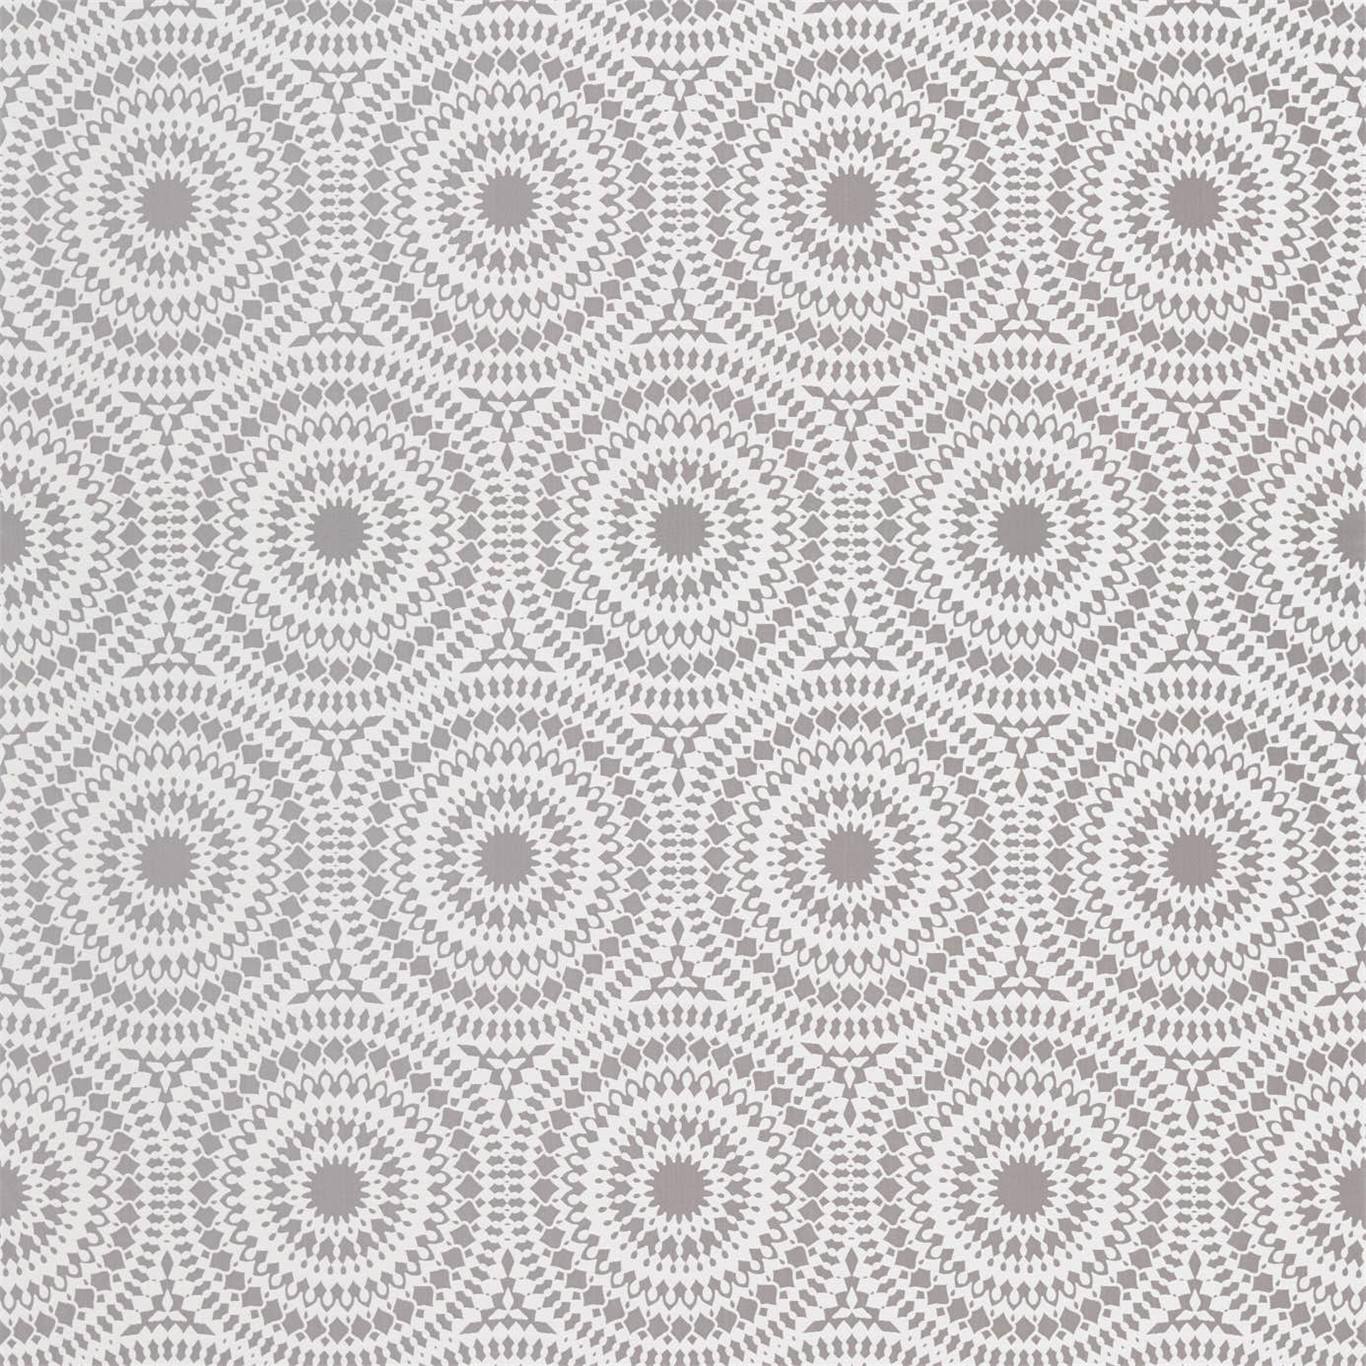 Cadencia French Grey Fabric by HAR